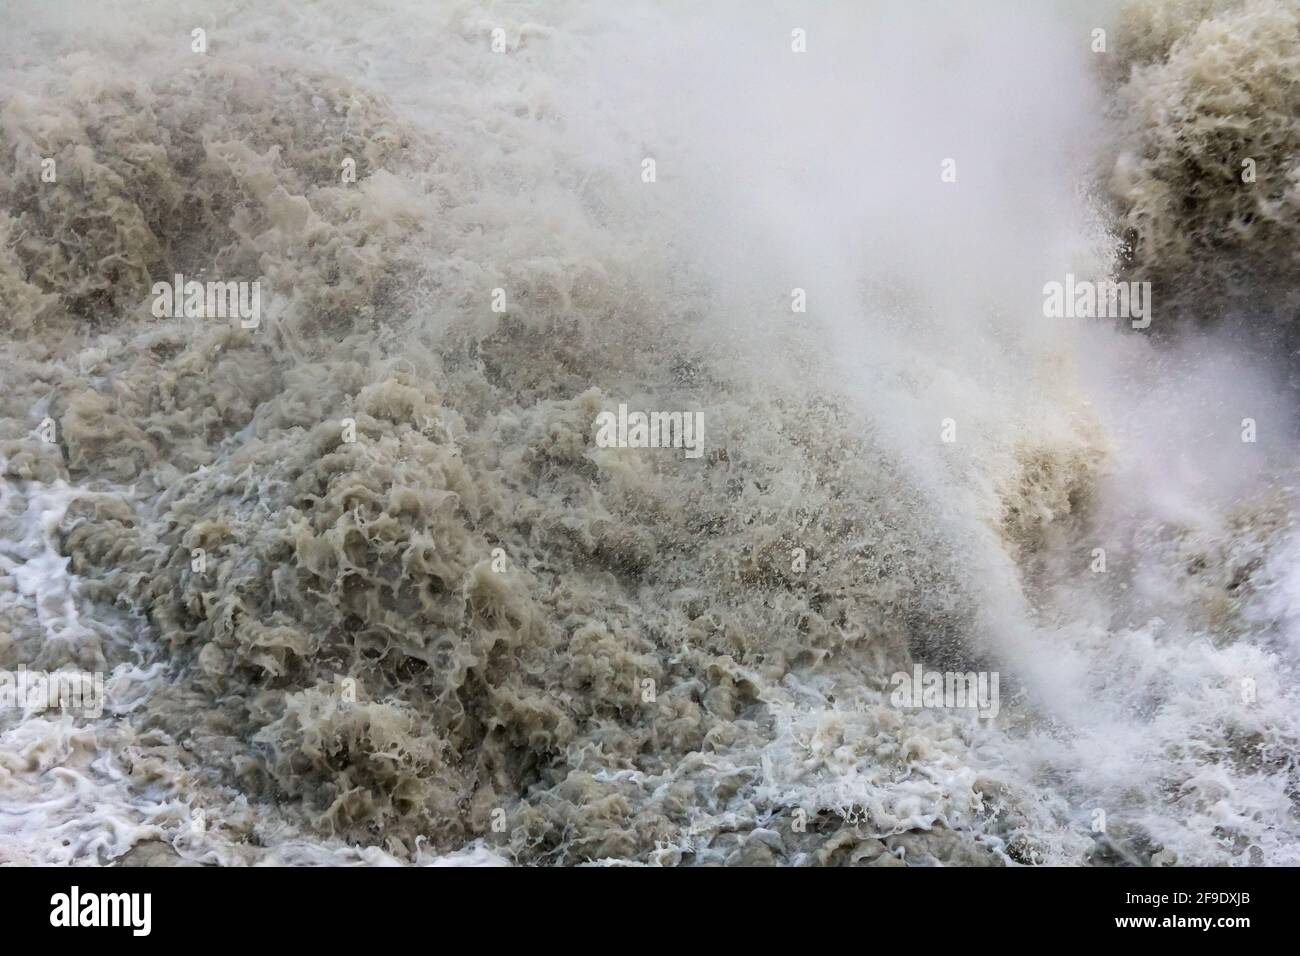 L'eau qui fait rage dans une rivière de montagne boueuse après une chute d'eau Banque D'Images